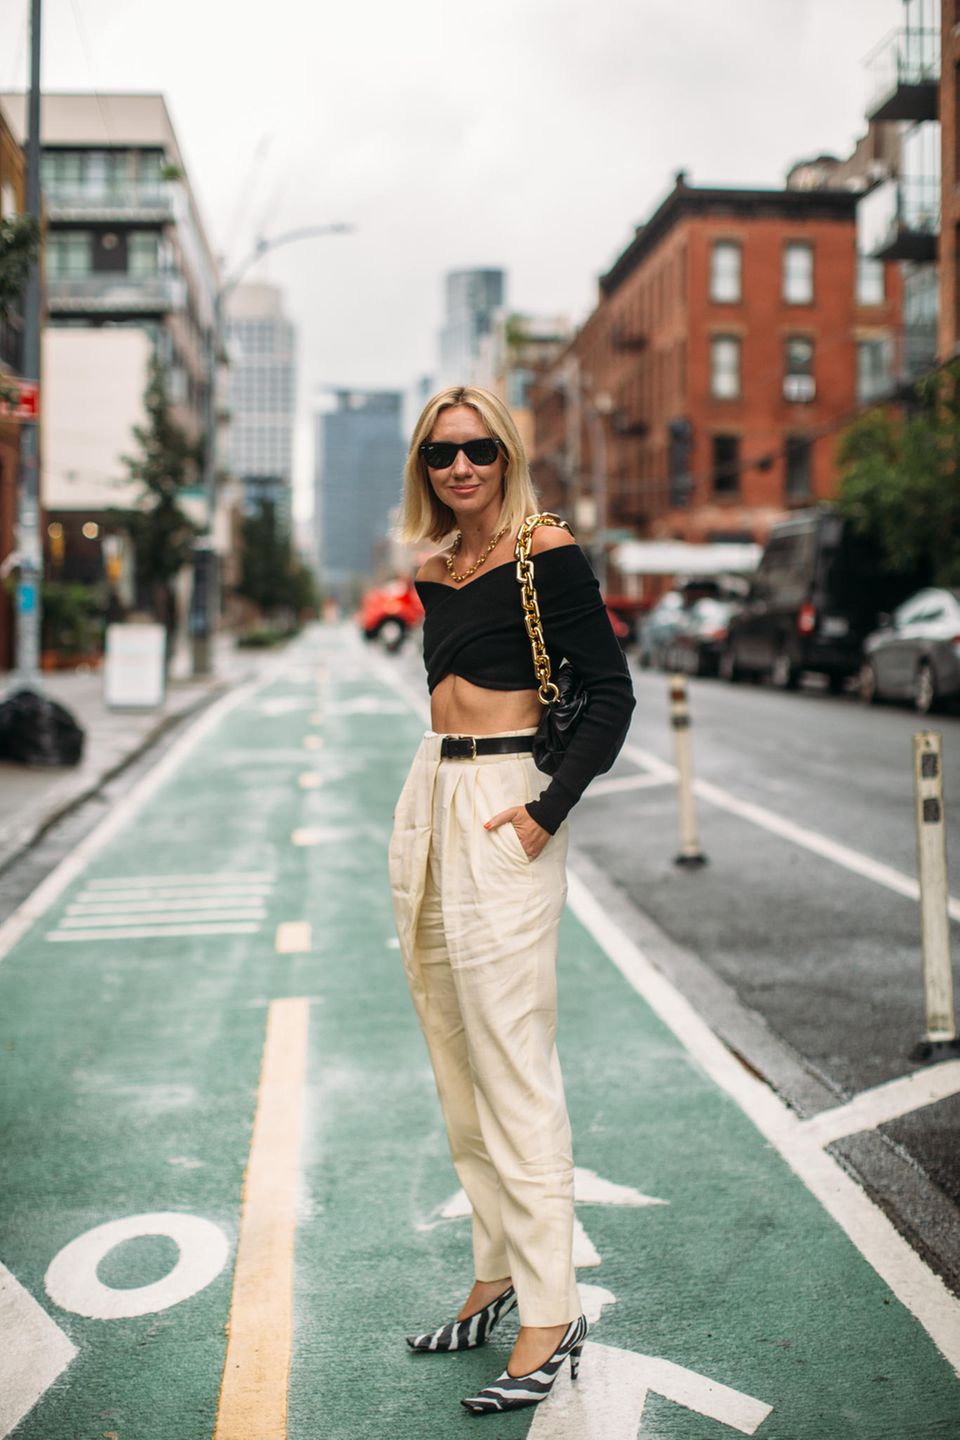 Dass ein cooler Look nicht viel Farbe brauch, zeigt diese Bloggerin in New York. Durch besondere Schnitte und Hingucker-Schuhe mit Zebra-Muster macht sie einen eher schlichten Look aufregend.